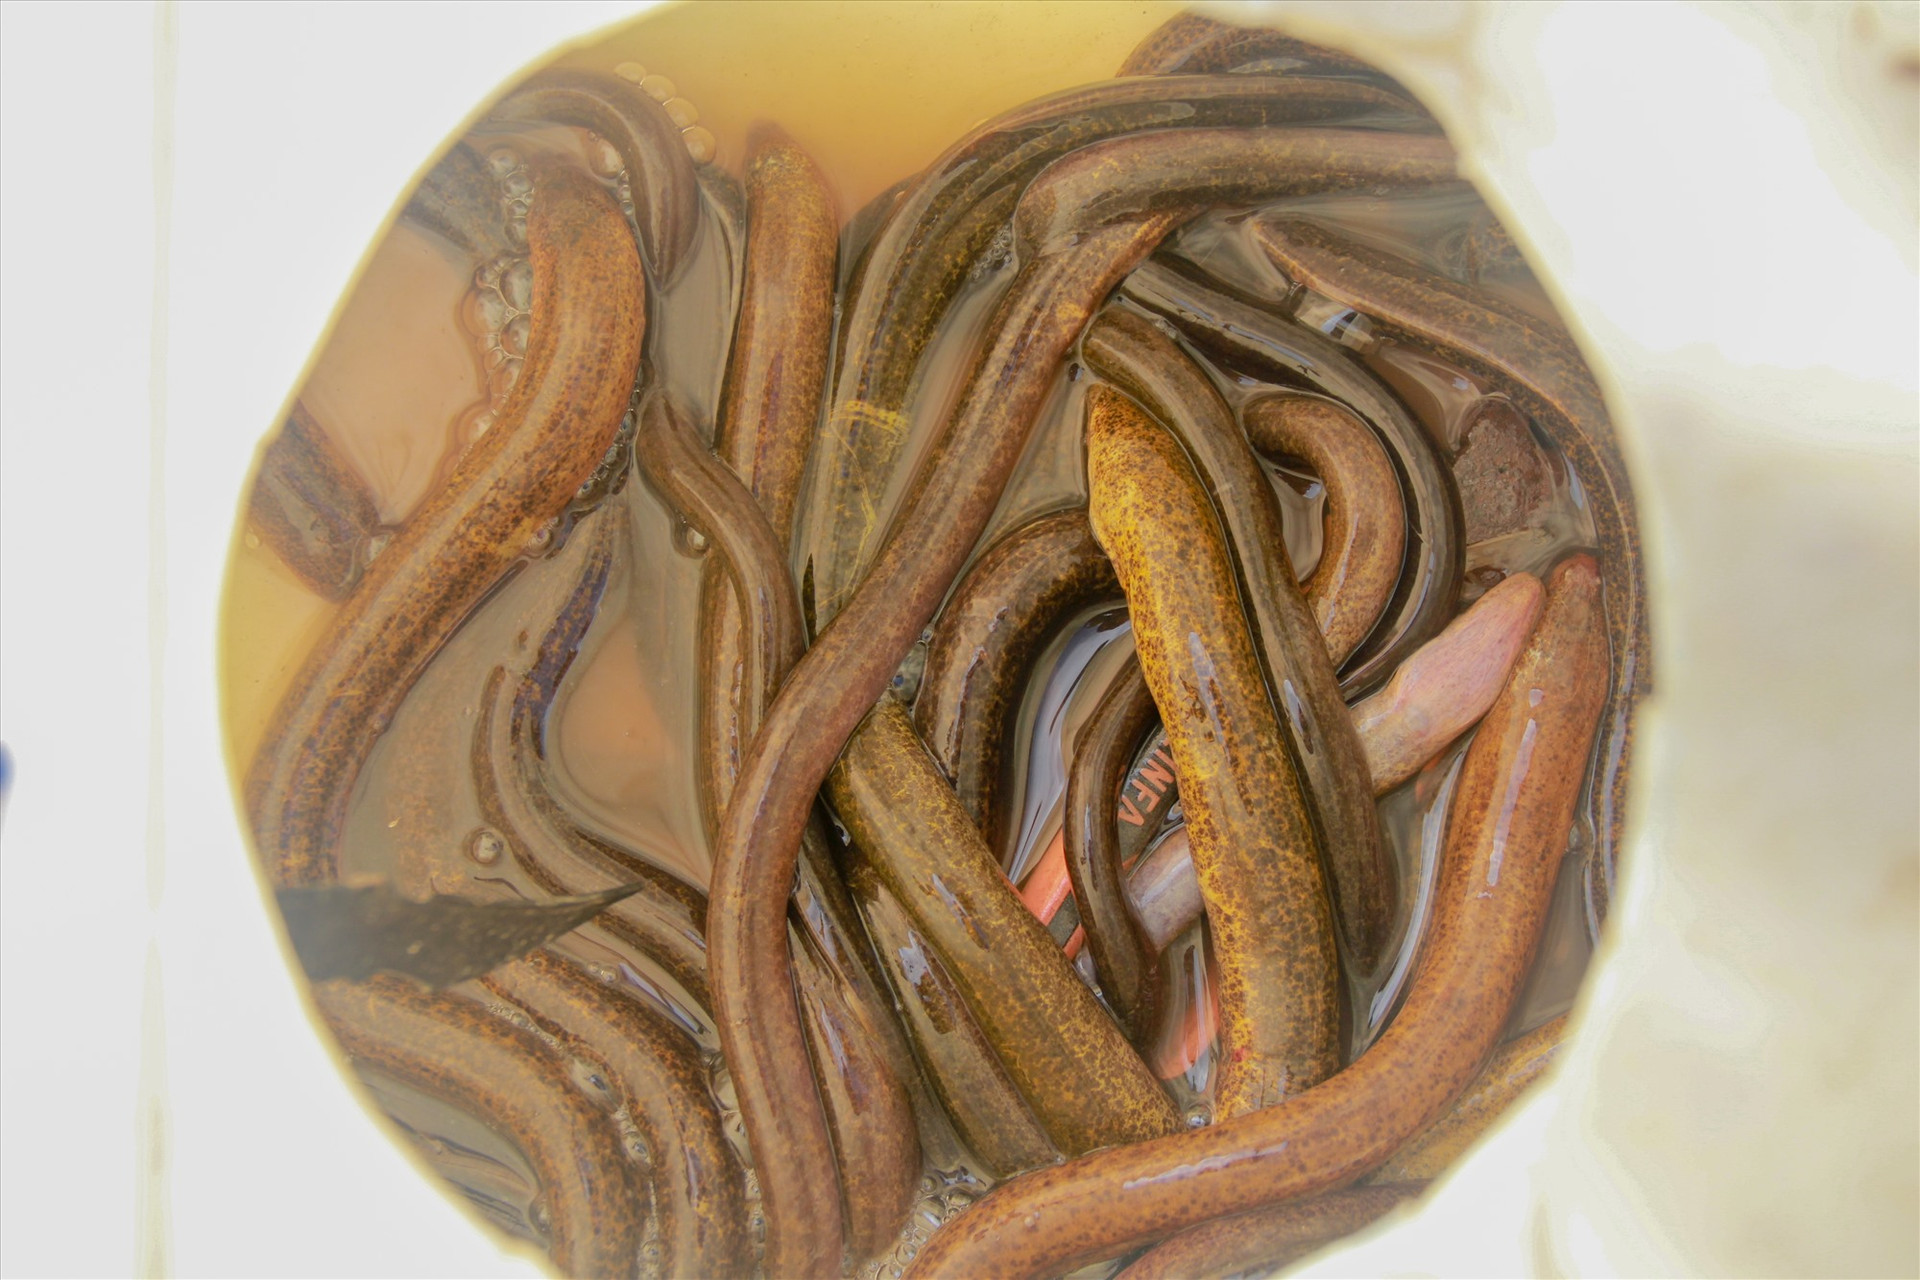 Những con lươn mùa lũ vàng óng, mang về thu nhập khá cho người cào lươn. Ảnh: T.L